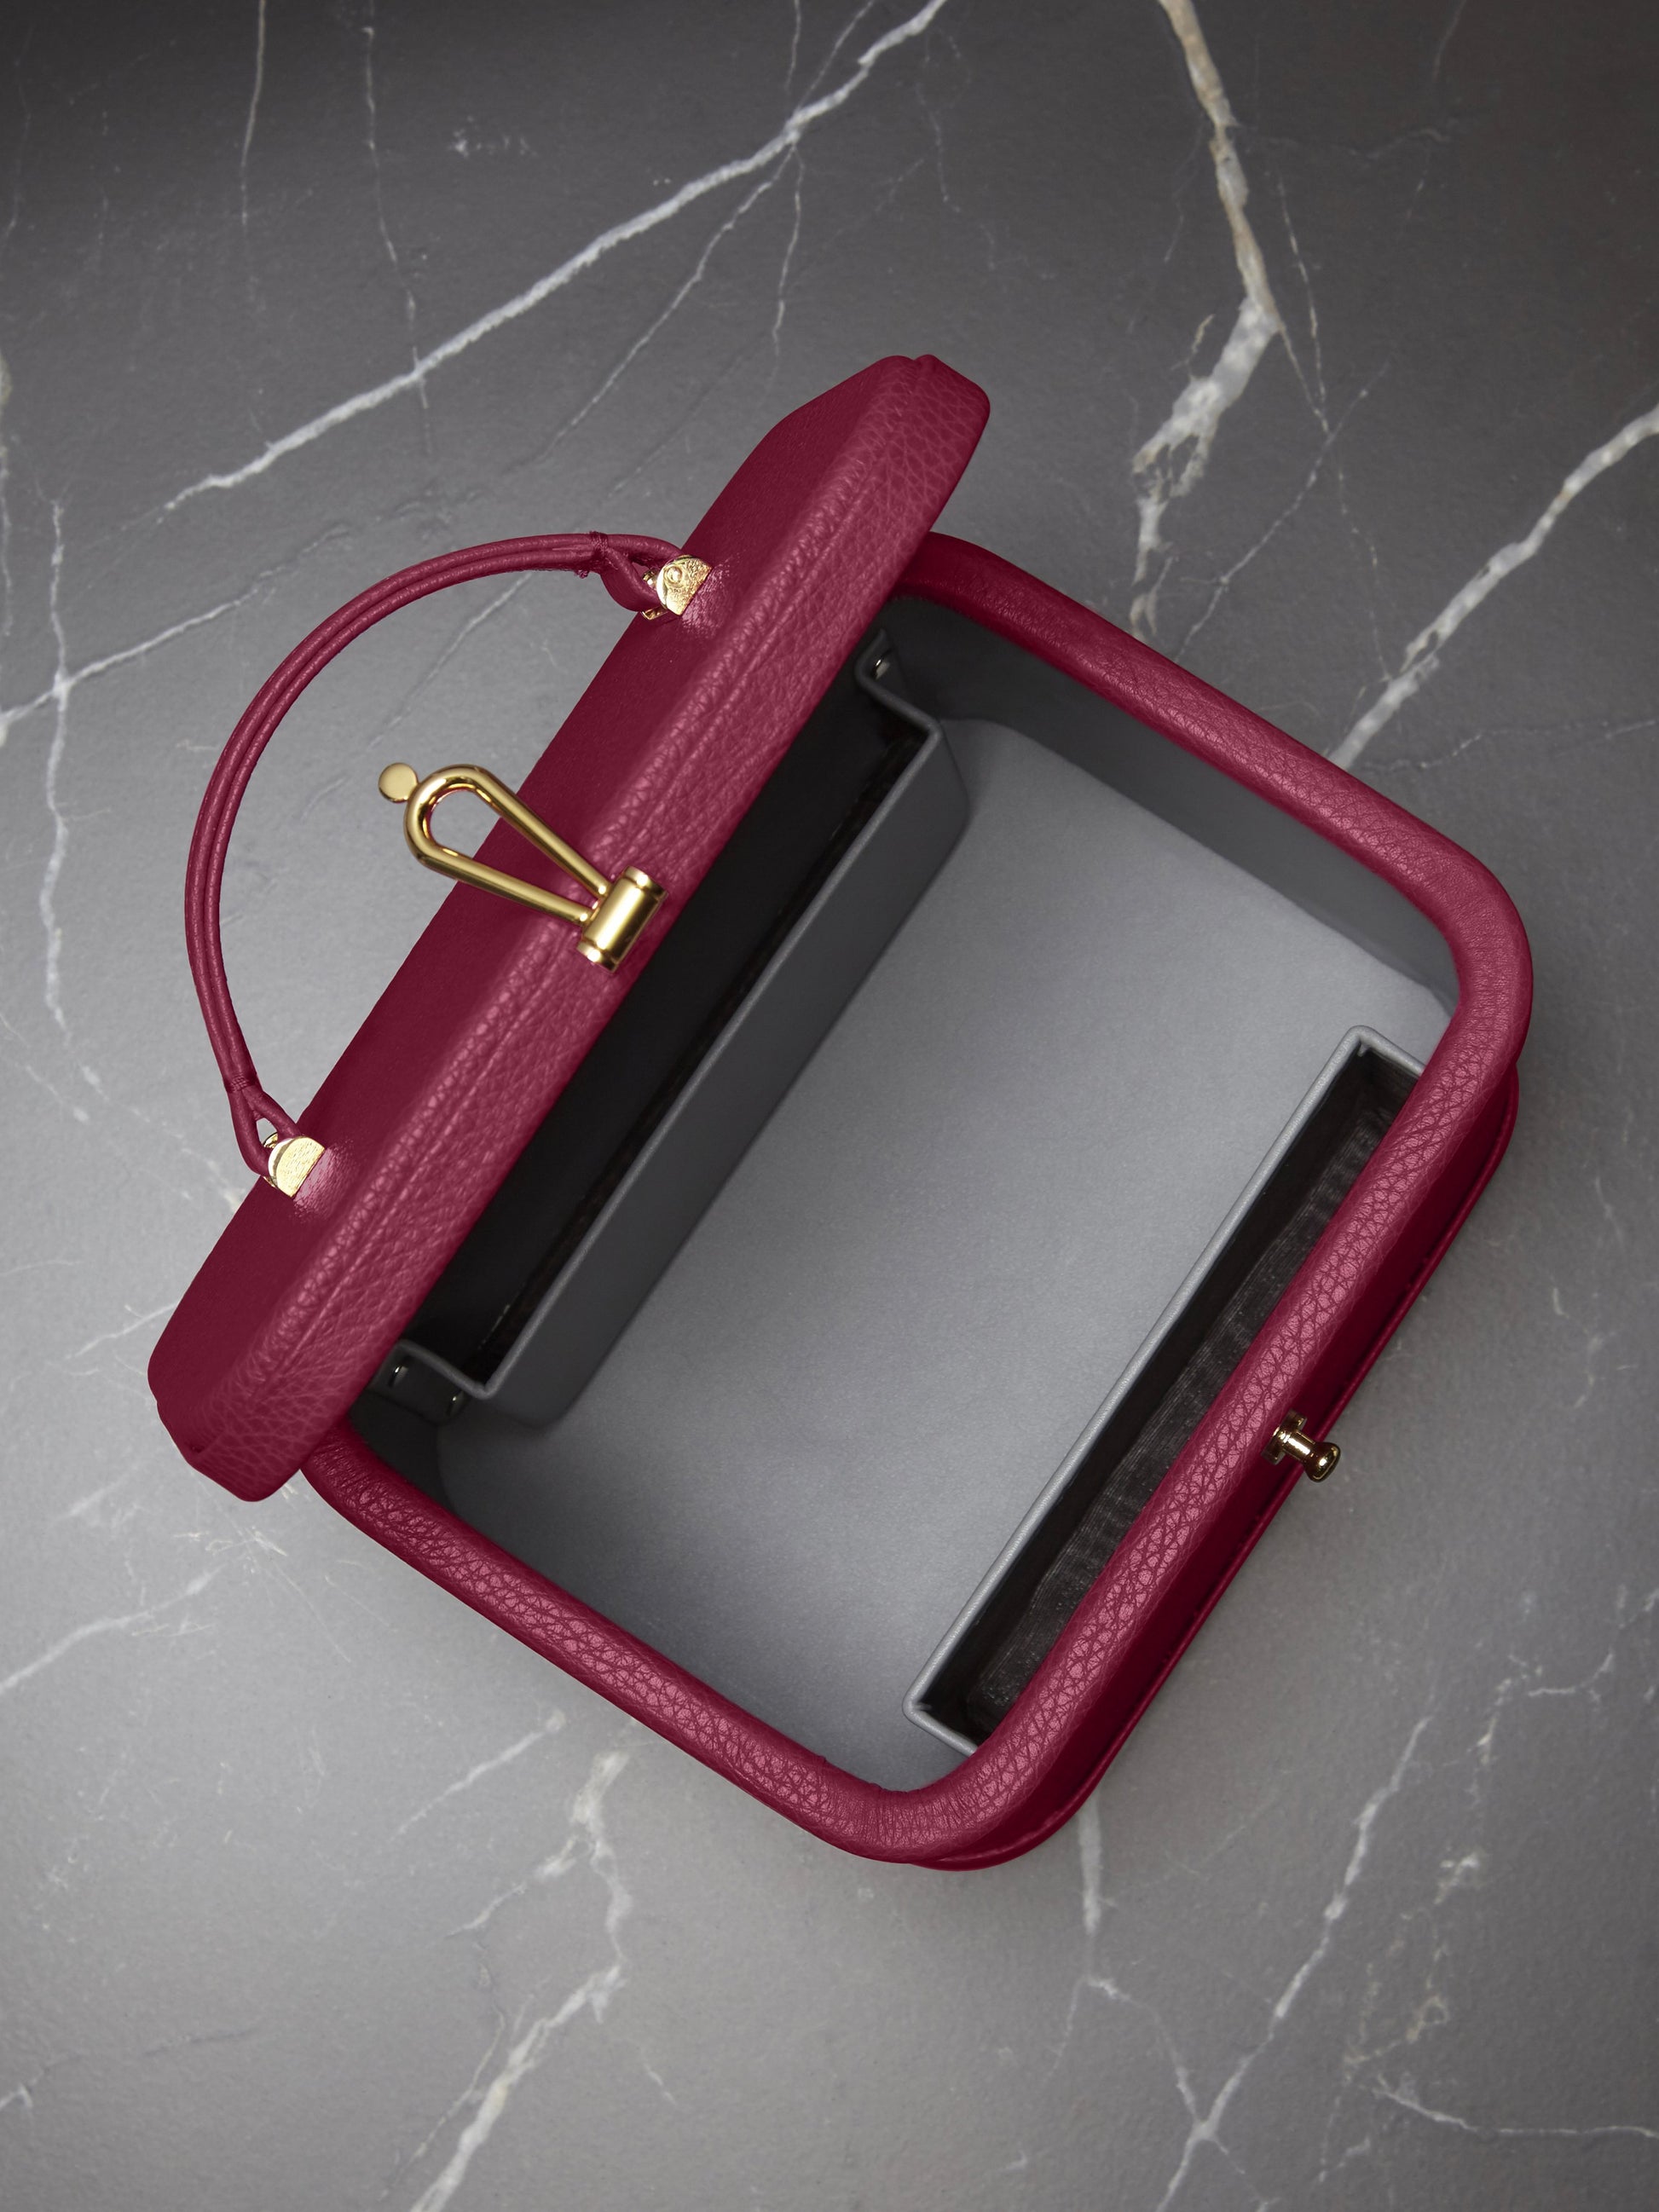 Atelier Verdi small pink leather vanity case, interior